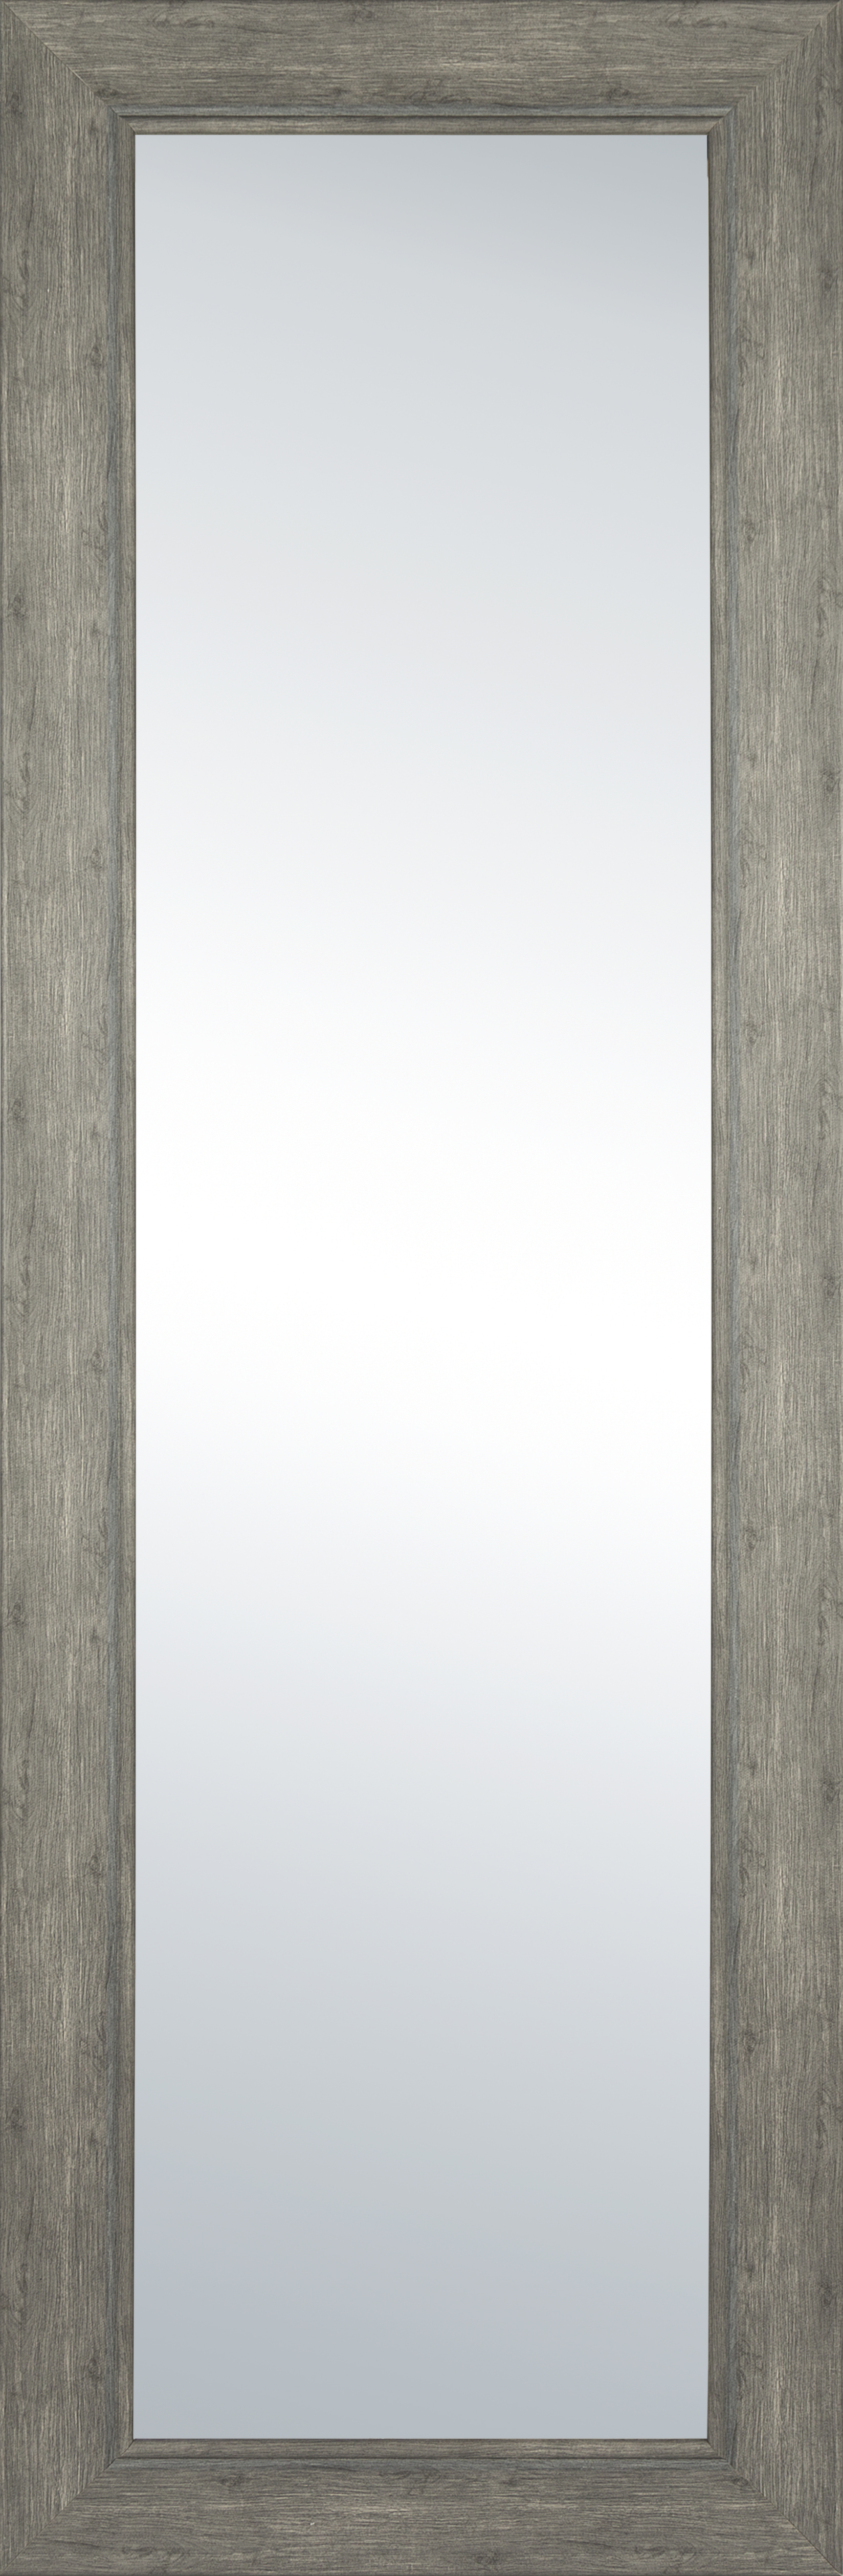 Mainstay 53 x 17 Beveled Door Mirror Black, Set of 1